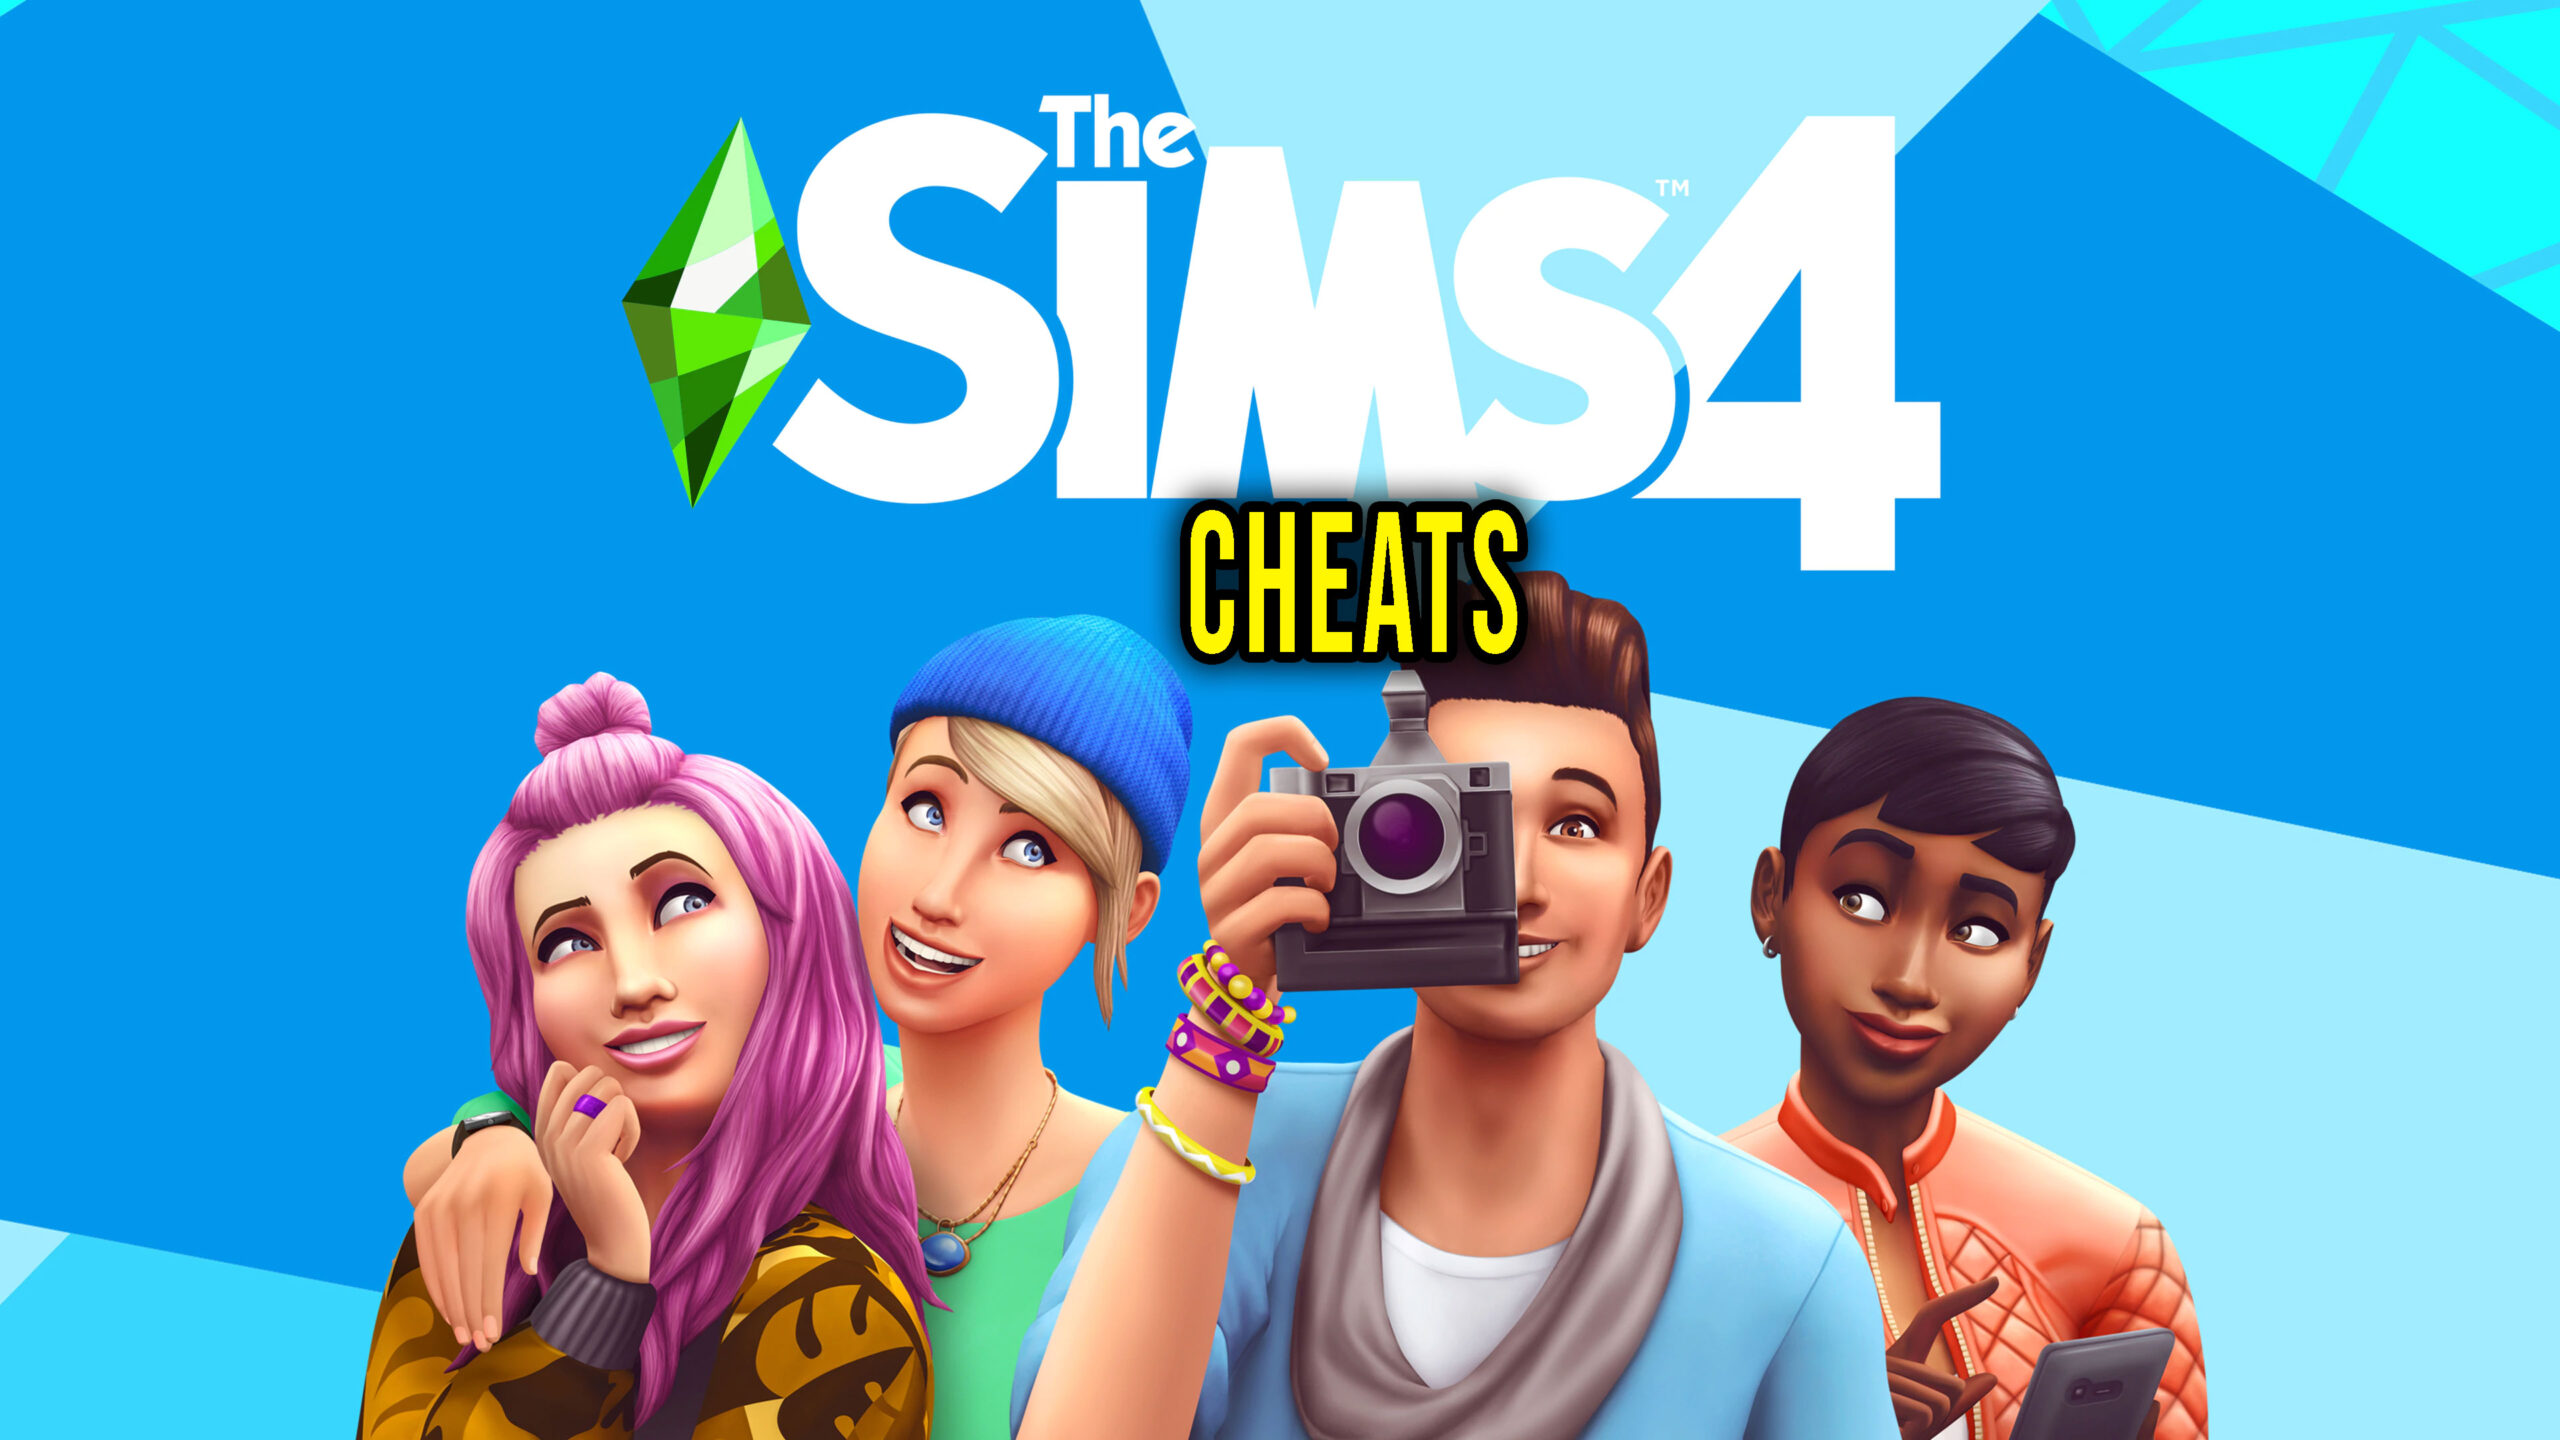 CHEATS - The Sims 4 - SimmerKat - CC finds, tutoriais e notícias sobre The Sims  4